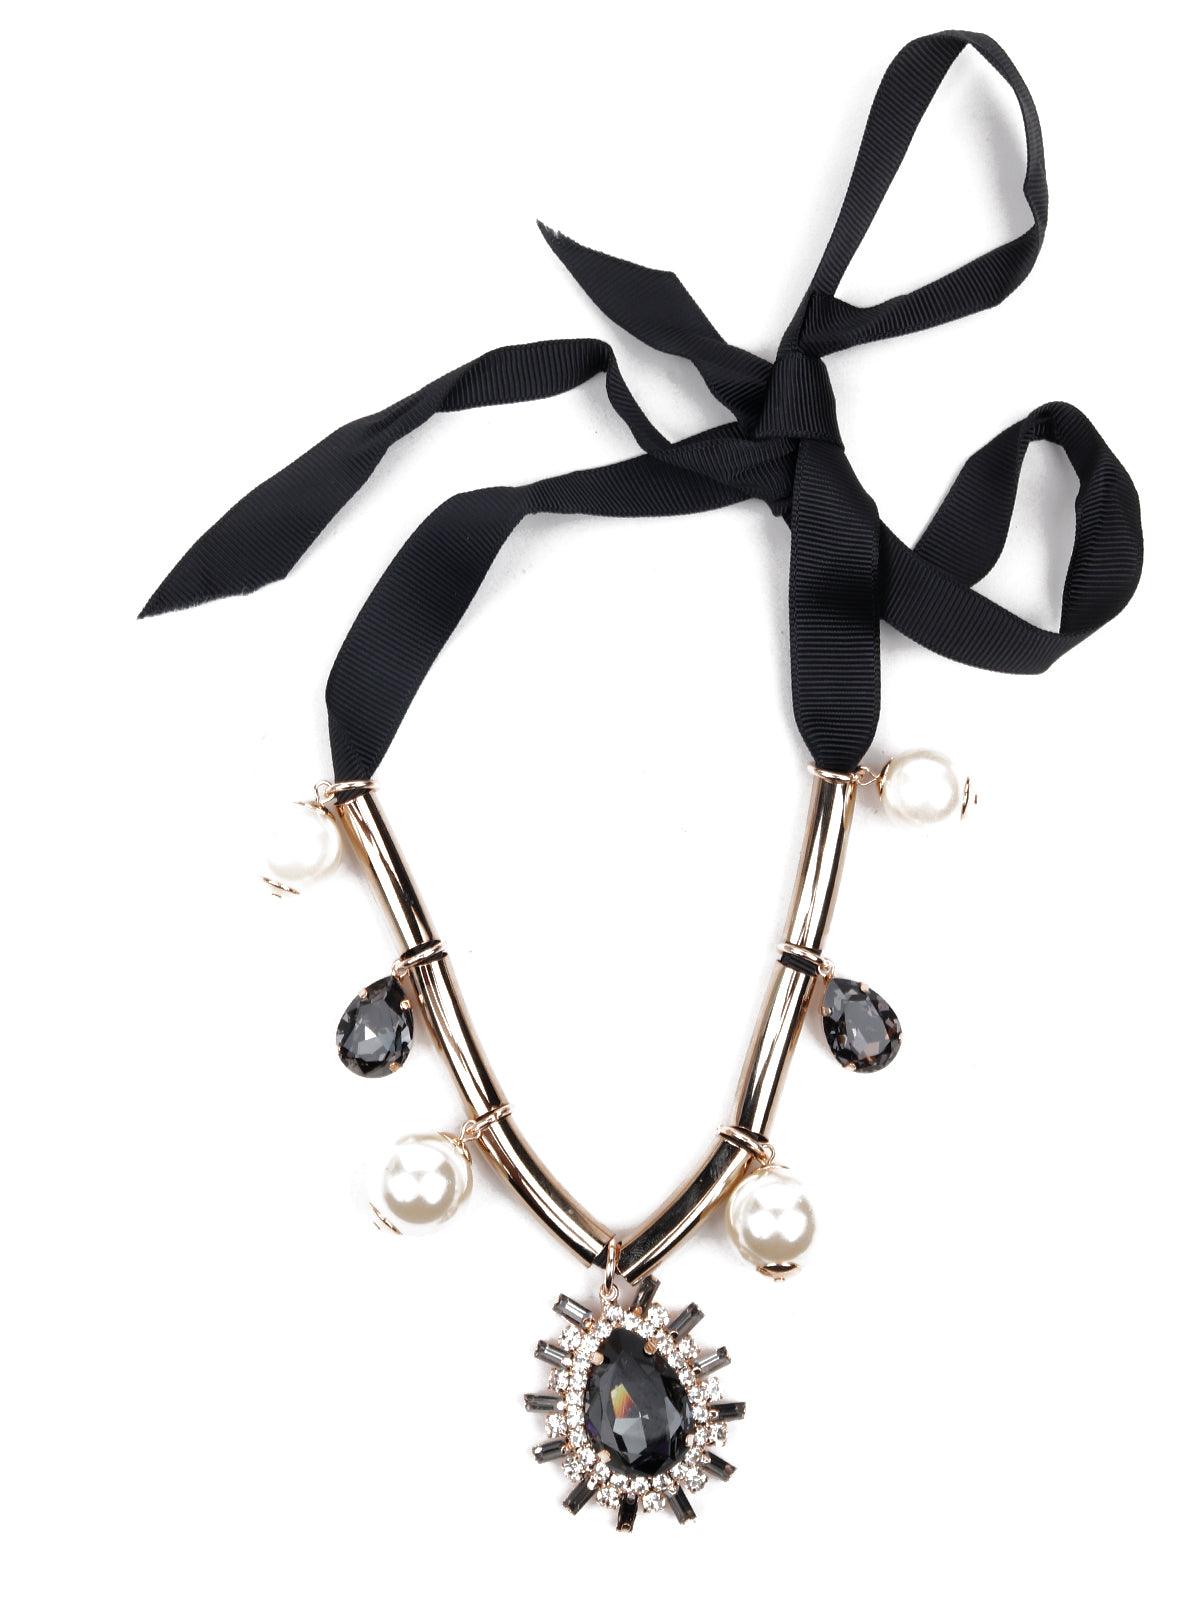 Stunning gold tone ribbon embellished necklace - Odette